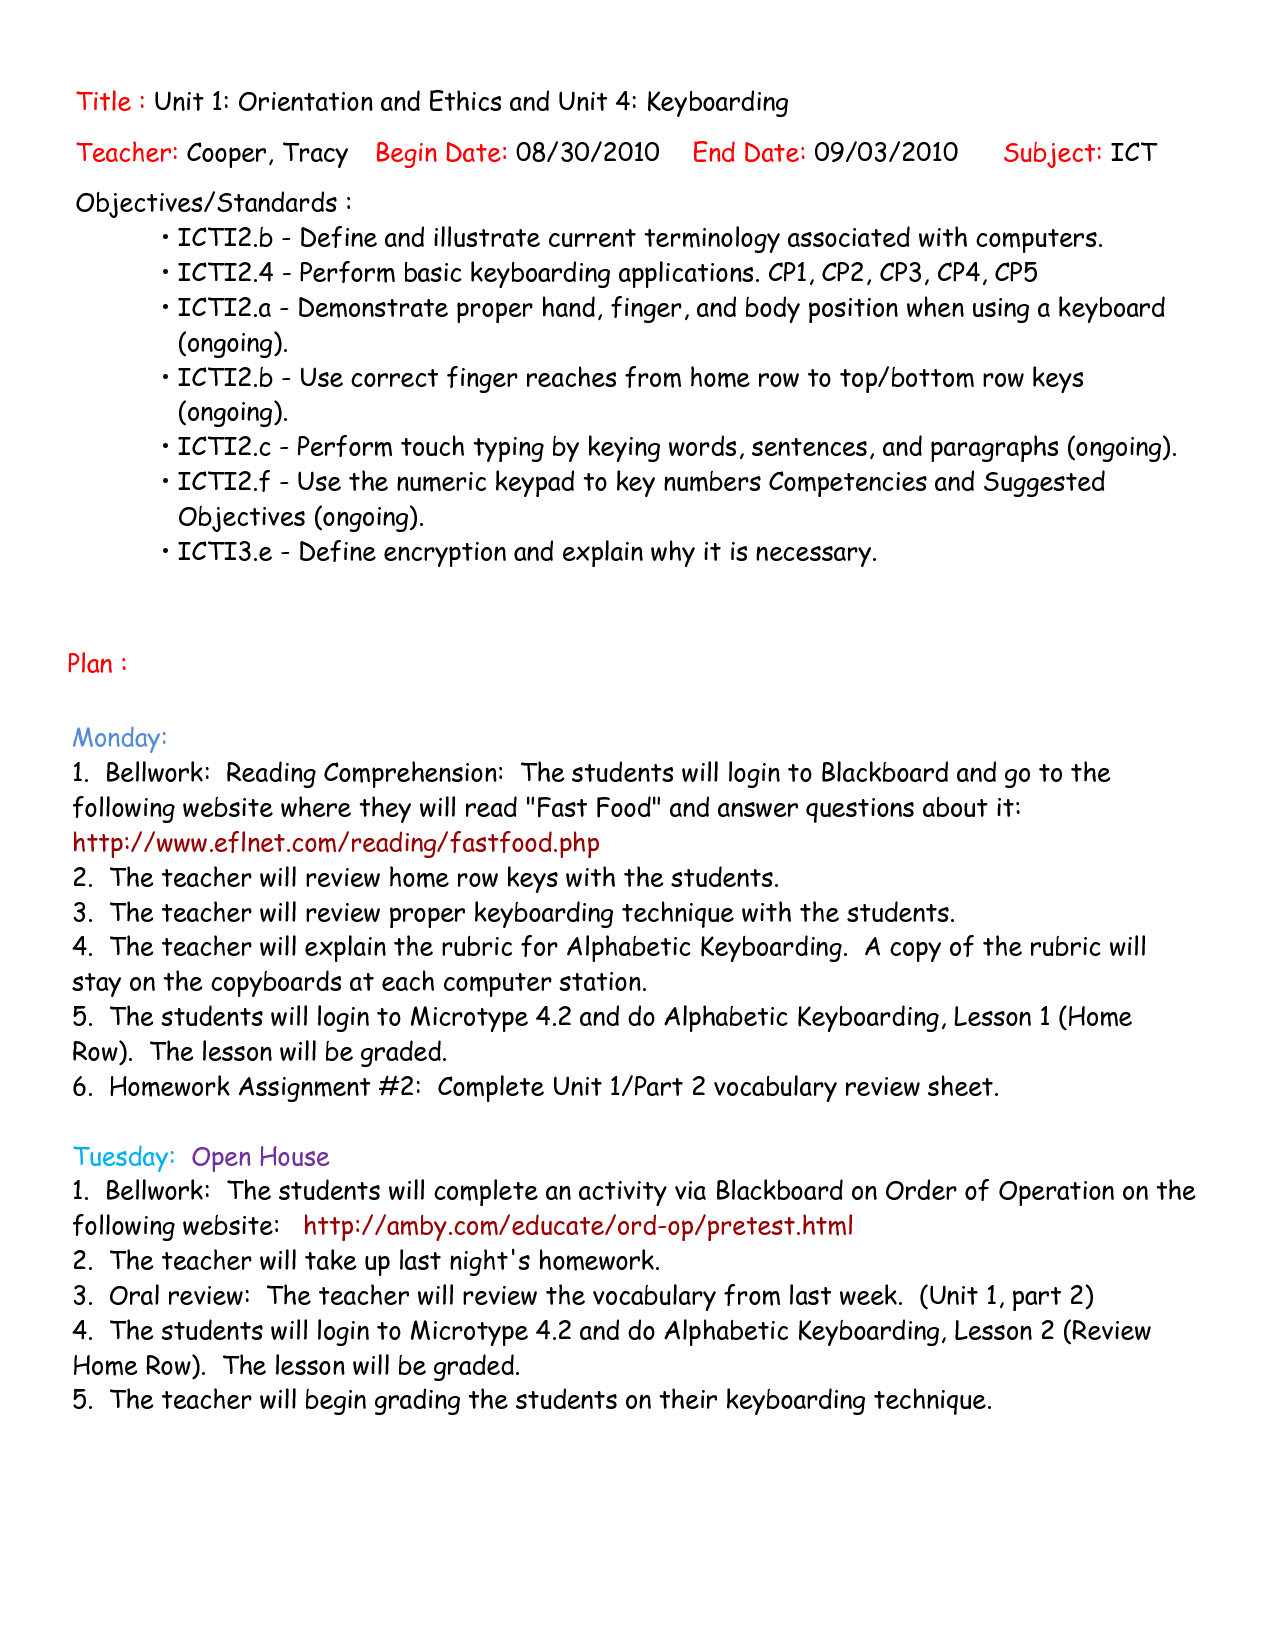 16-keyboarding-worksheets-for-students-worksheeto